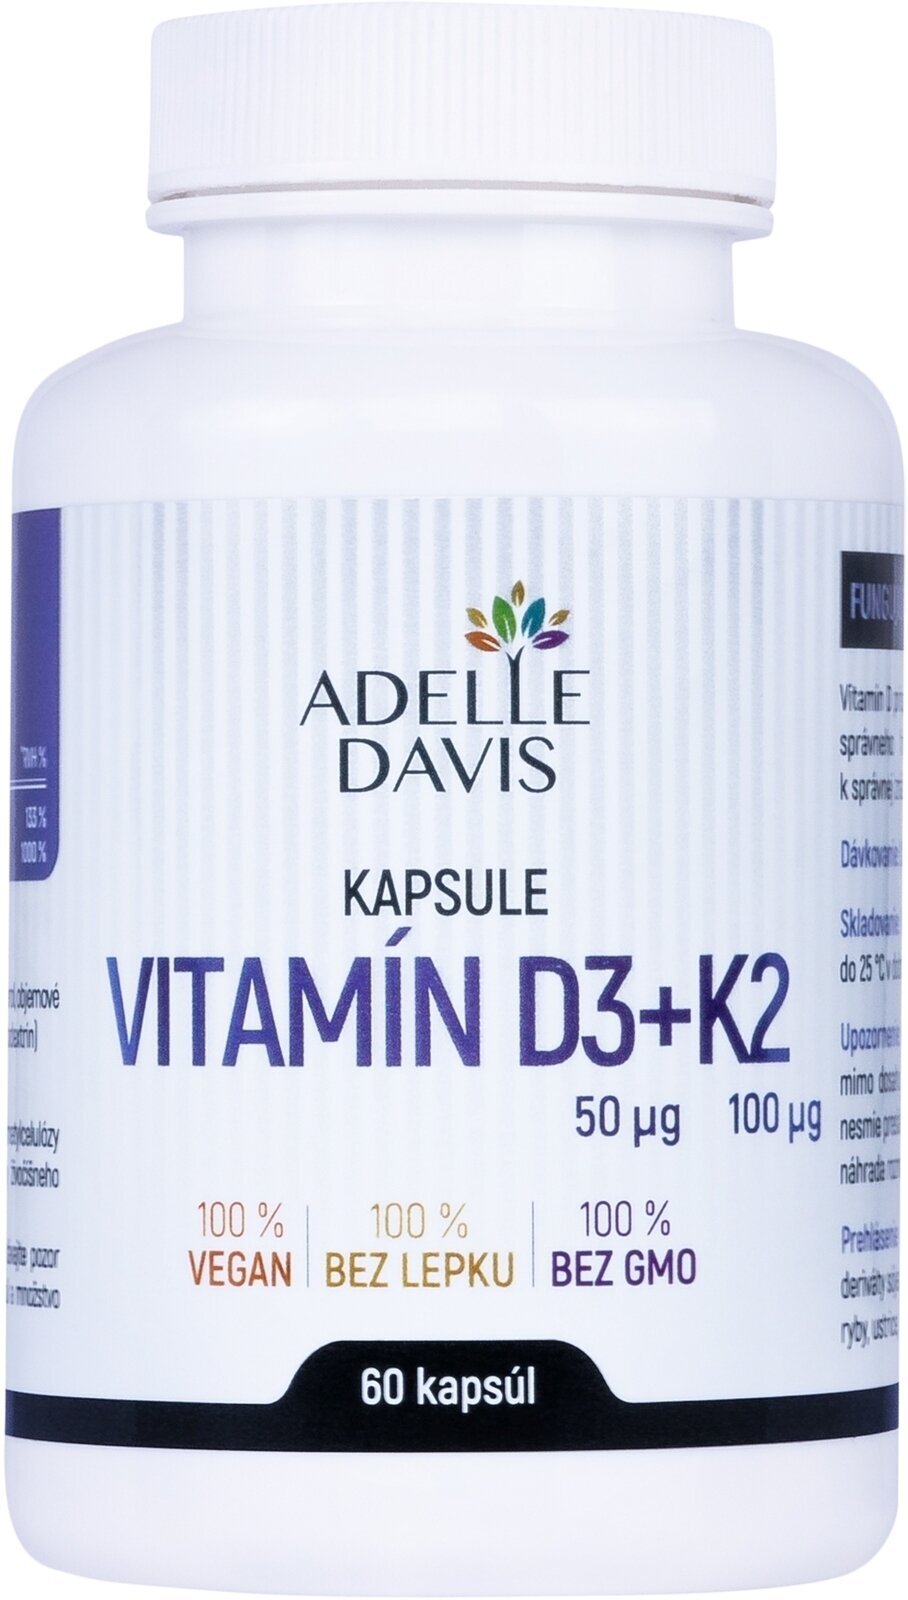 D-vitamin Adelle Davis Vitamin D3 + K2 60 Capsules D-vitamin